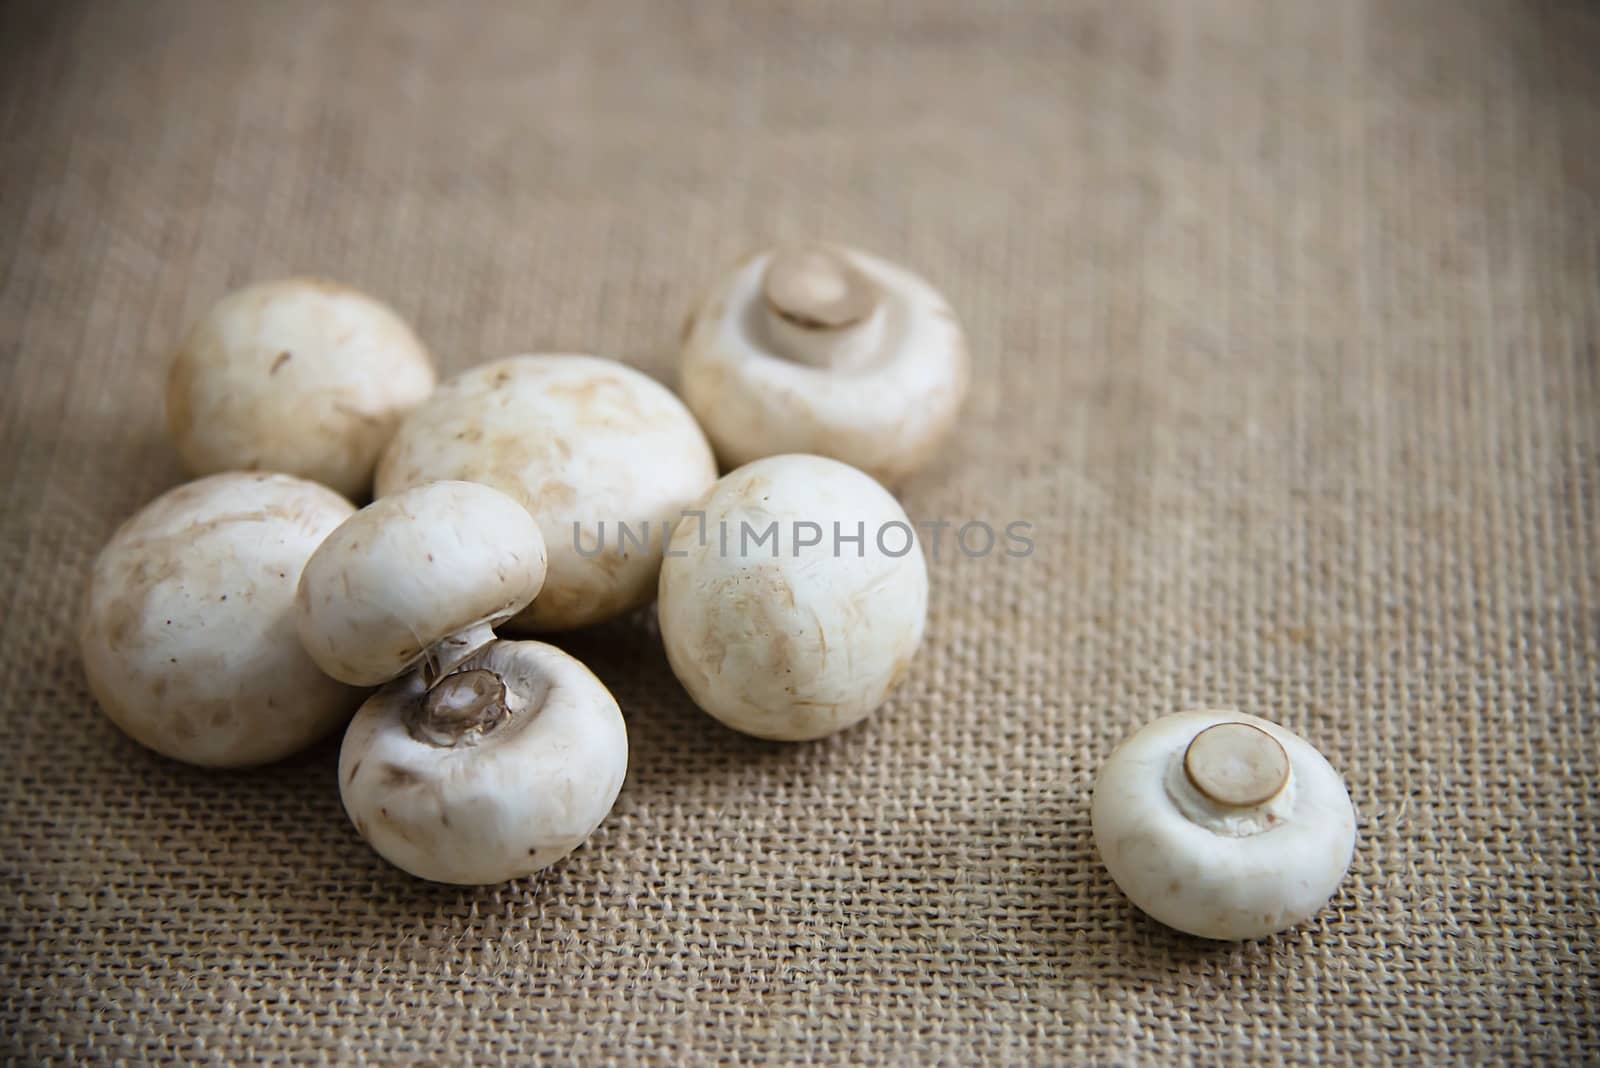 Fresh champignon mushroom vegetable in the kitchen - fresh mushroom vegetable cooking concept by pairhandmade